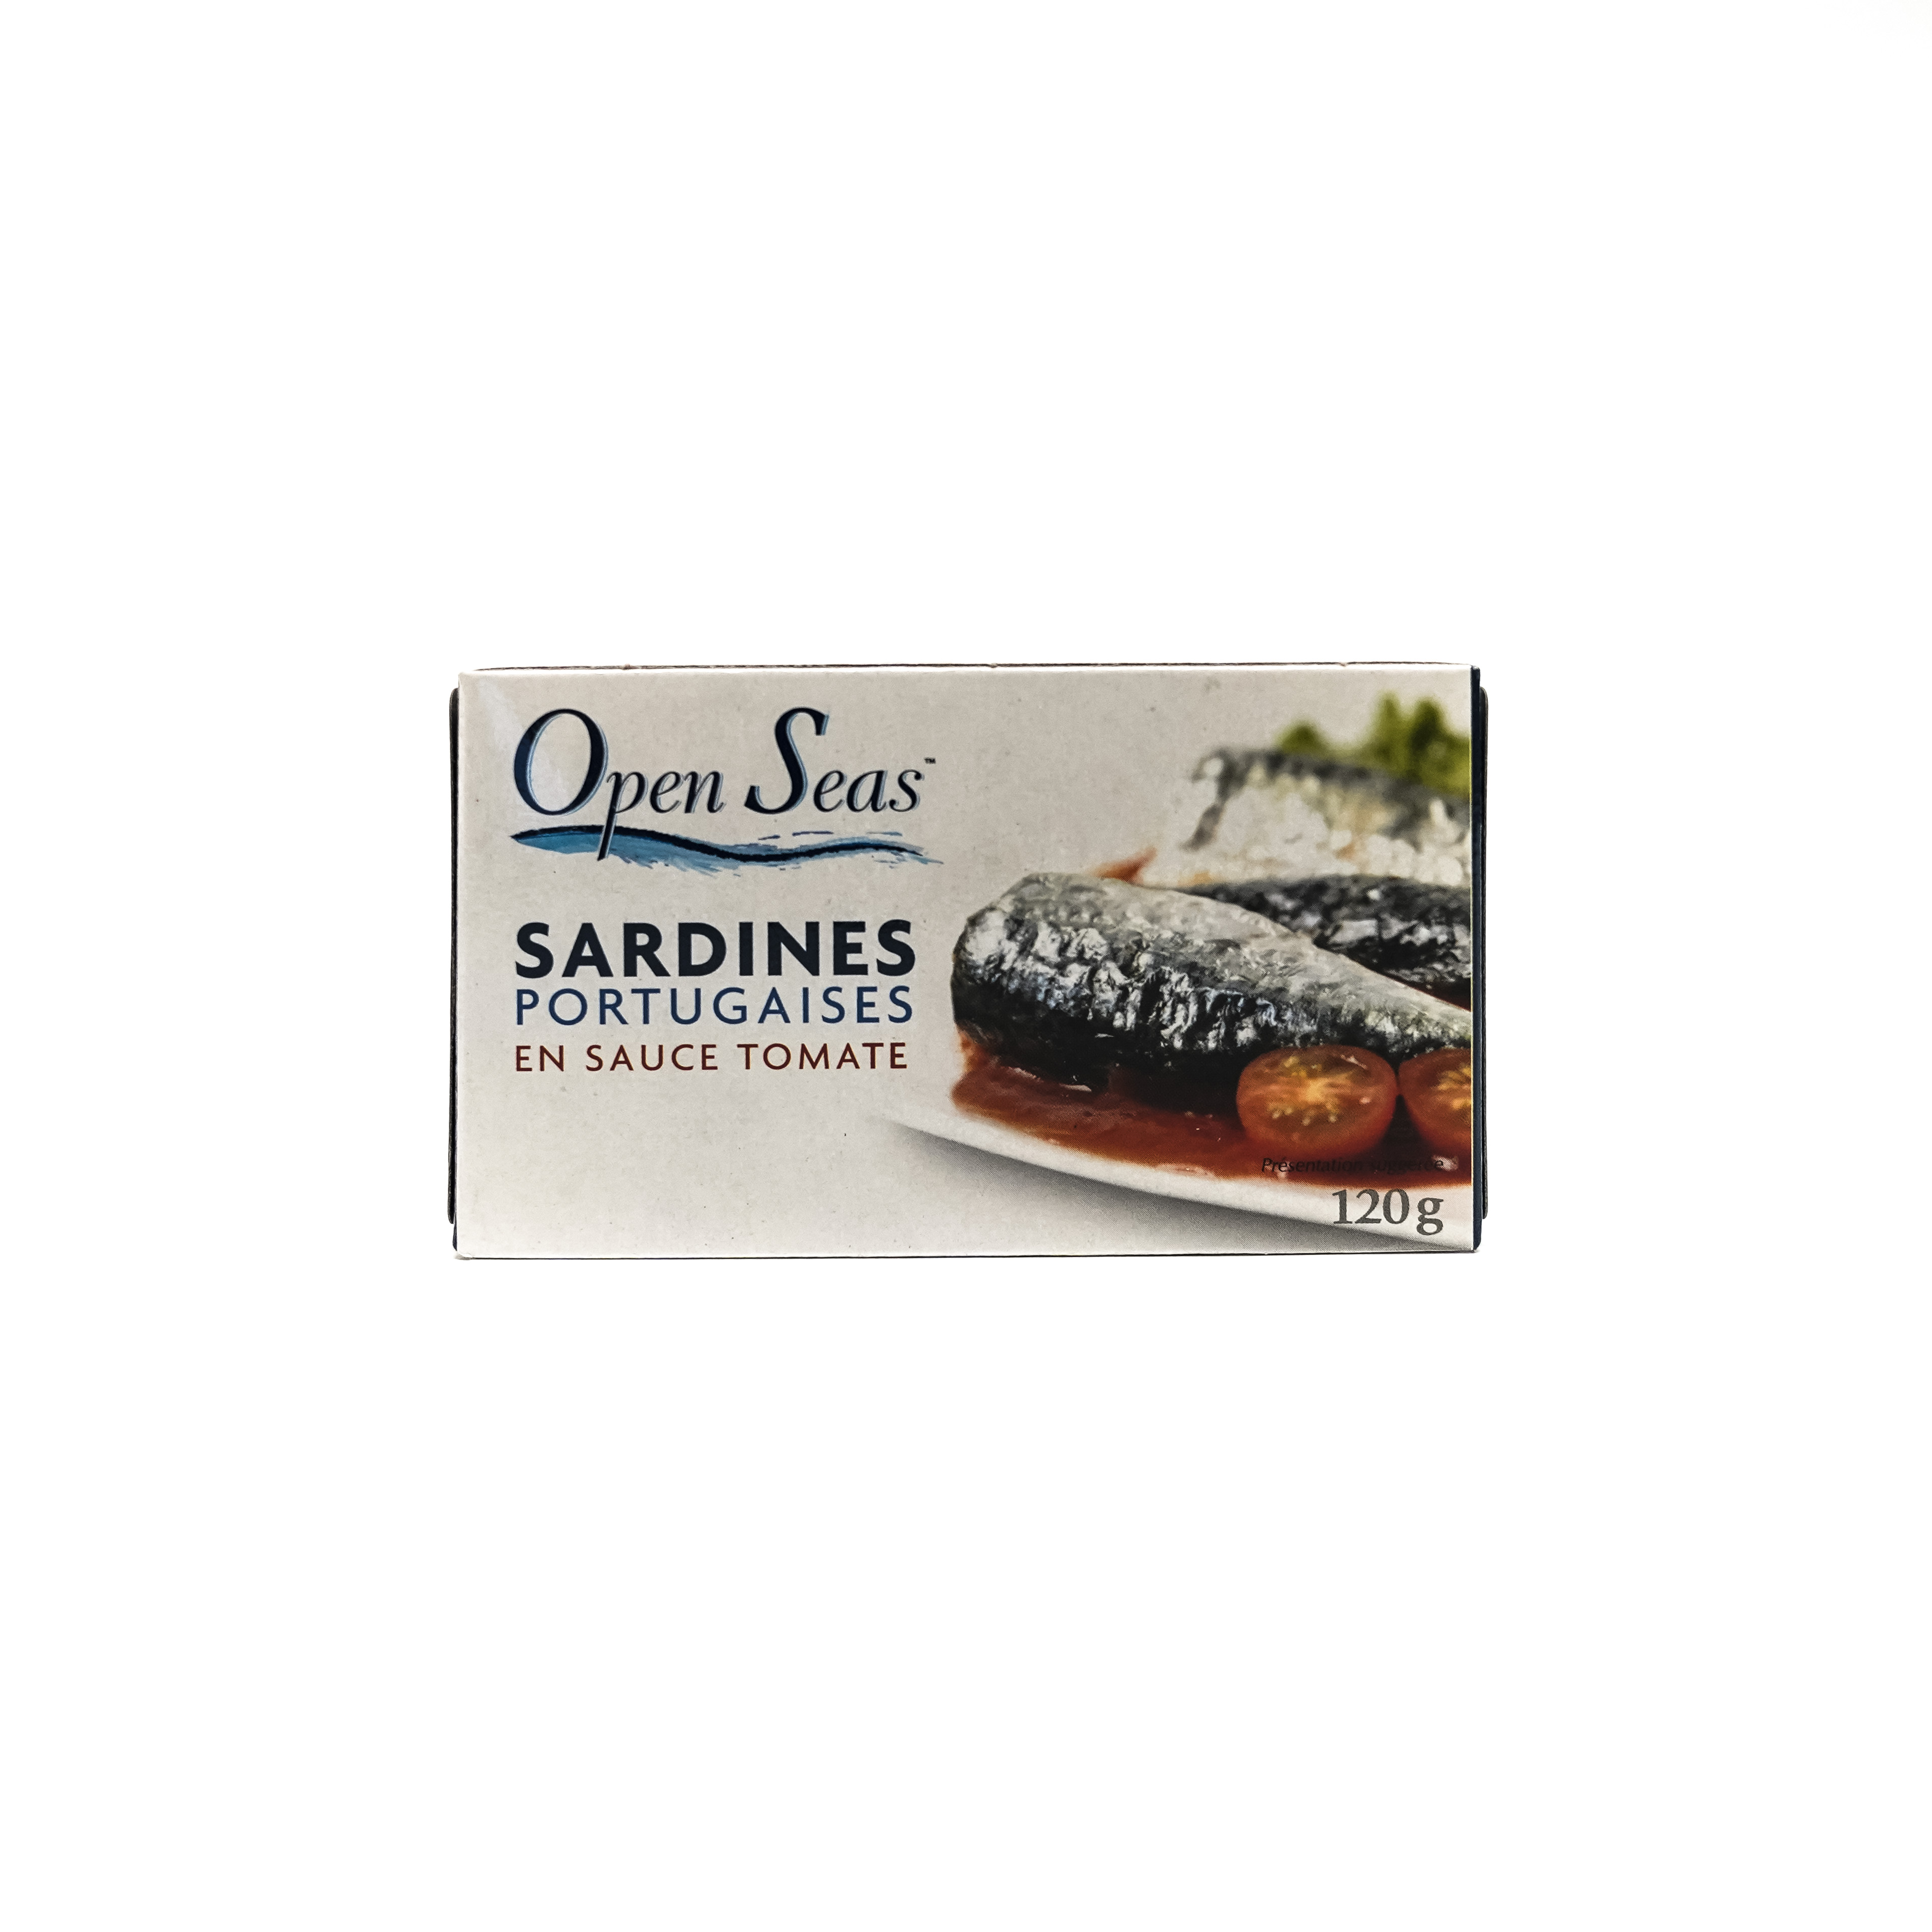 Open Seas Portuguese Sardine Fillets in Tomato Sauce